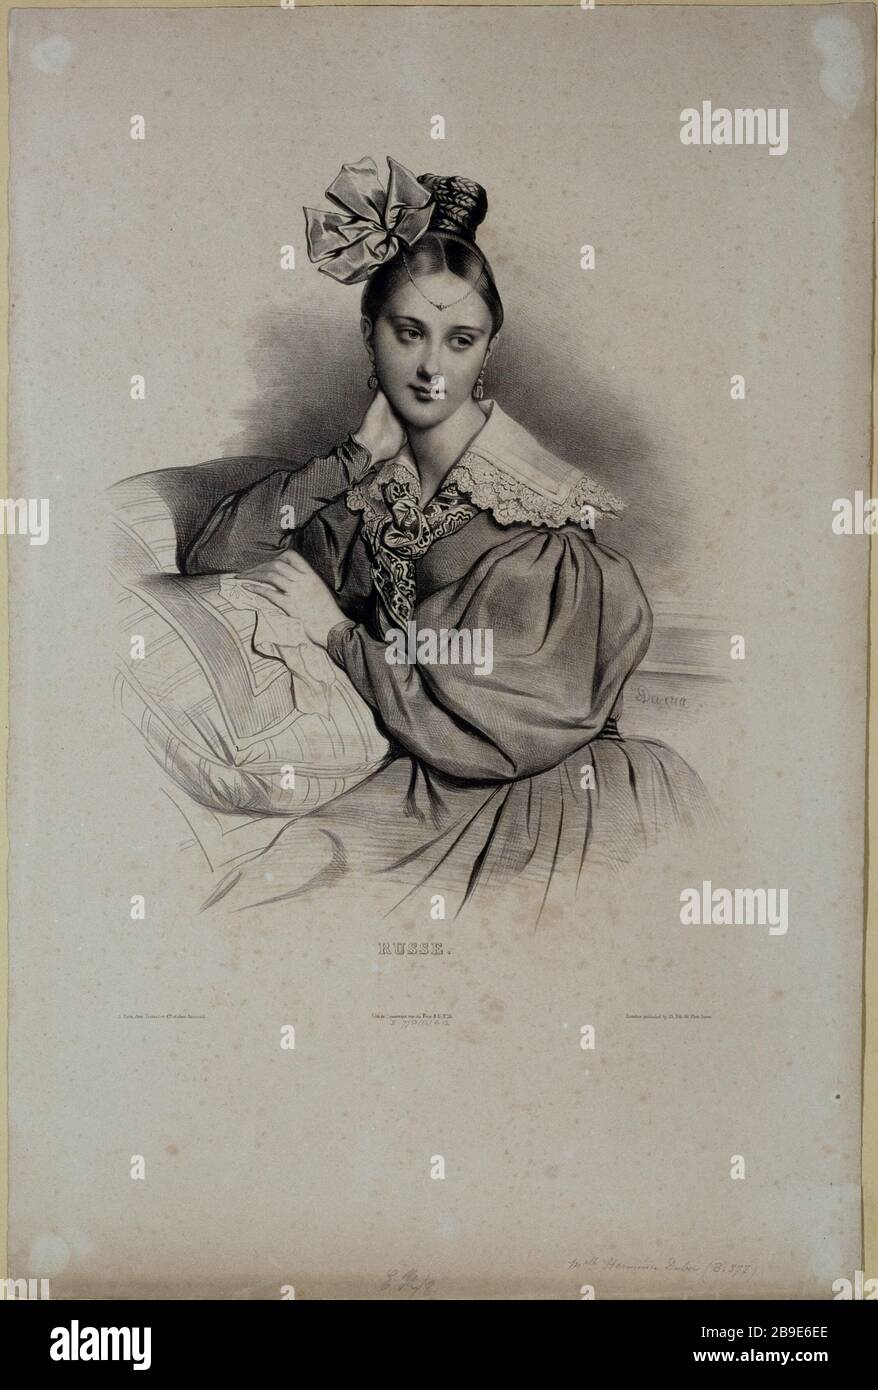 RUSSISCH - PORTRÄT VON MISS HERMINE DUBOIS ACHILLE DEVÉRIA (1800-1857). "Russe, 1831 (Portrait de mademoiselle Hermine Dubois)". Tiefdruck. Paris, musée Carnavalet. Stockfoto